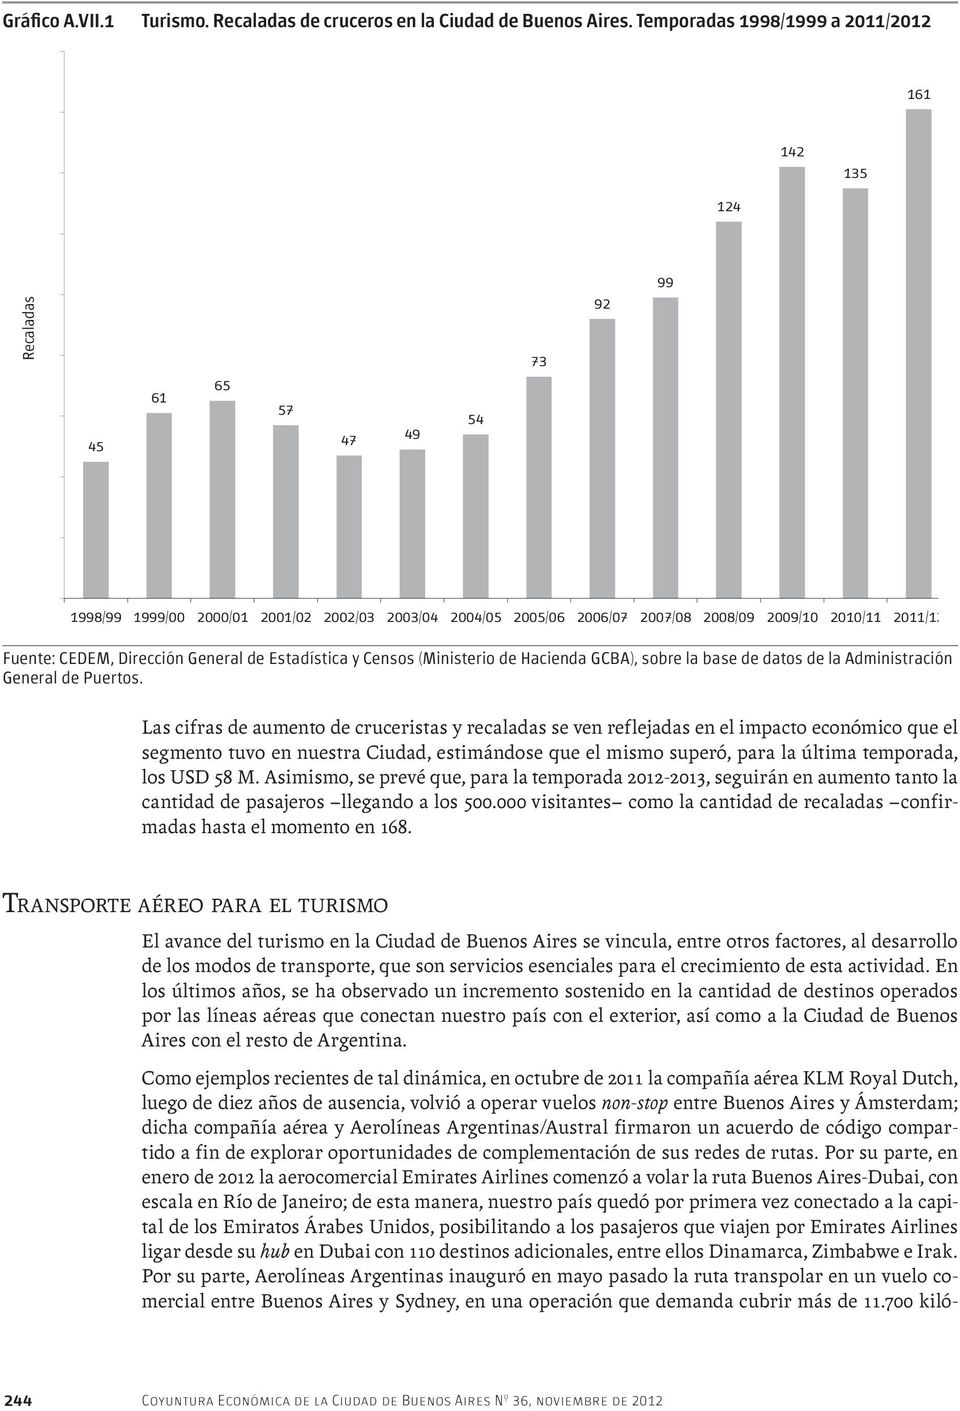 2011/12 Fuente: CEDEM, Dirección General de Estadística y Censos (Ministerio de Hacienda GCBA), sobre la base de datos de la Administración General de Puertos.